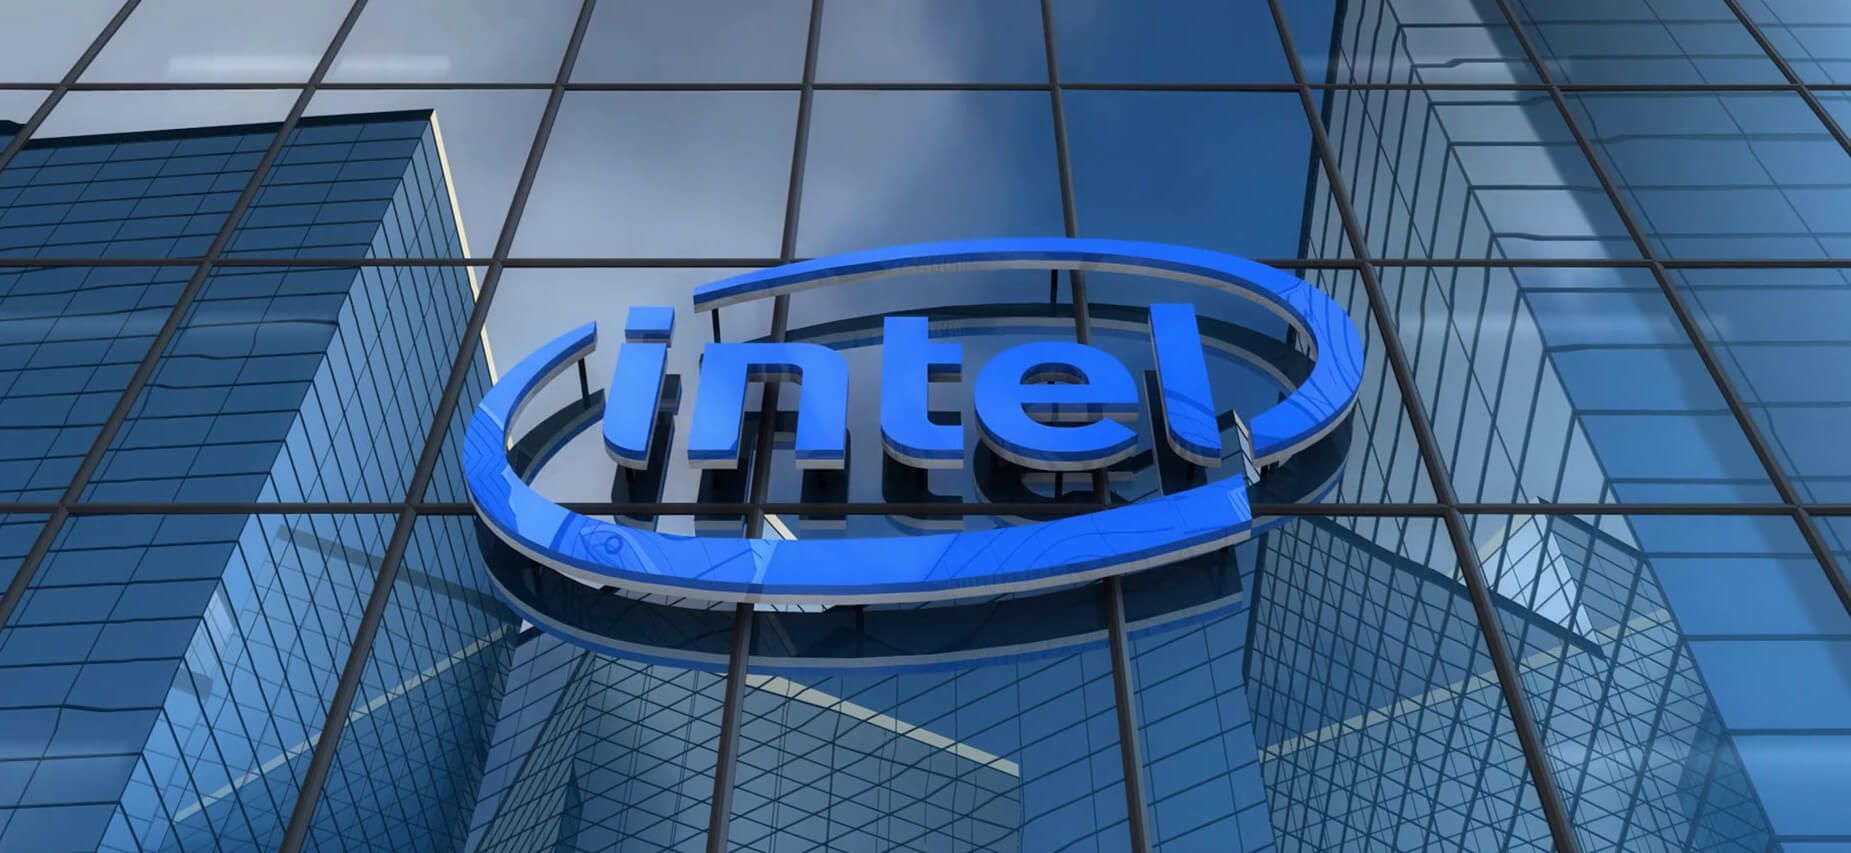 Intel achieved record revenue of $77.9 billion in 2020